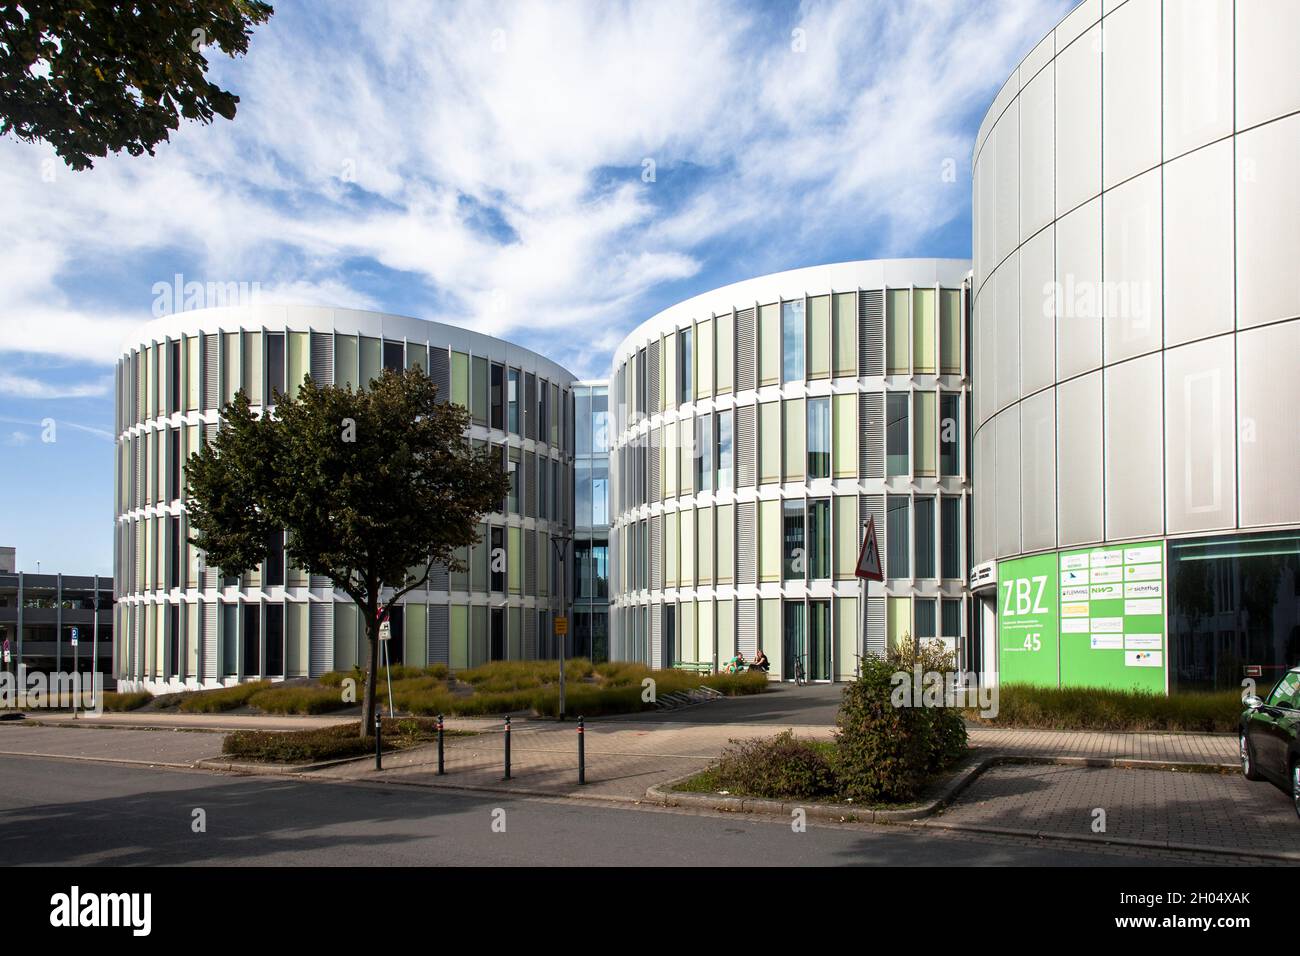 Le centre de recherche dentaire et des sciences de la vie de Witten (ZBZ), Witten, Rhénanie-du-Nord-Westphalie, Allemagne.Zahnmedizinisch-Biowissenschaftliches Forschun Banque D'Images